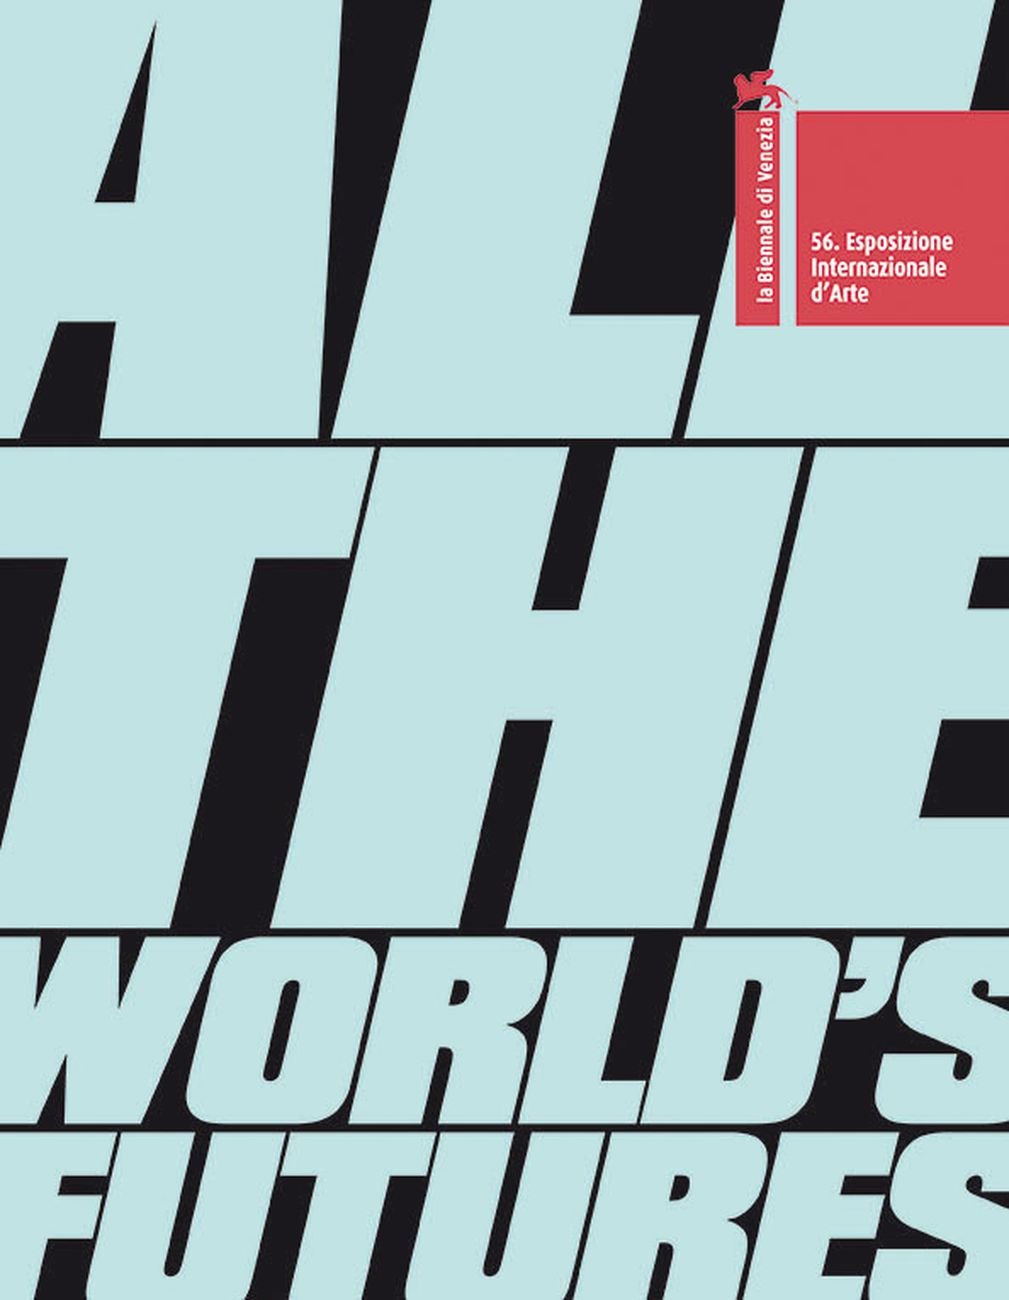 Okwui Enwezor (ed.) – All the World’s Futures. 56. Esposizione internazionale d'arte (Marsilio, Venezia 2015)